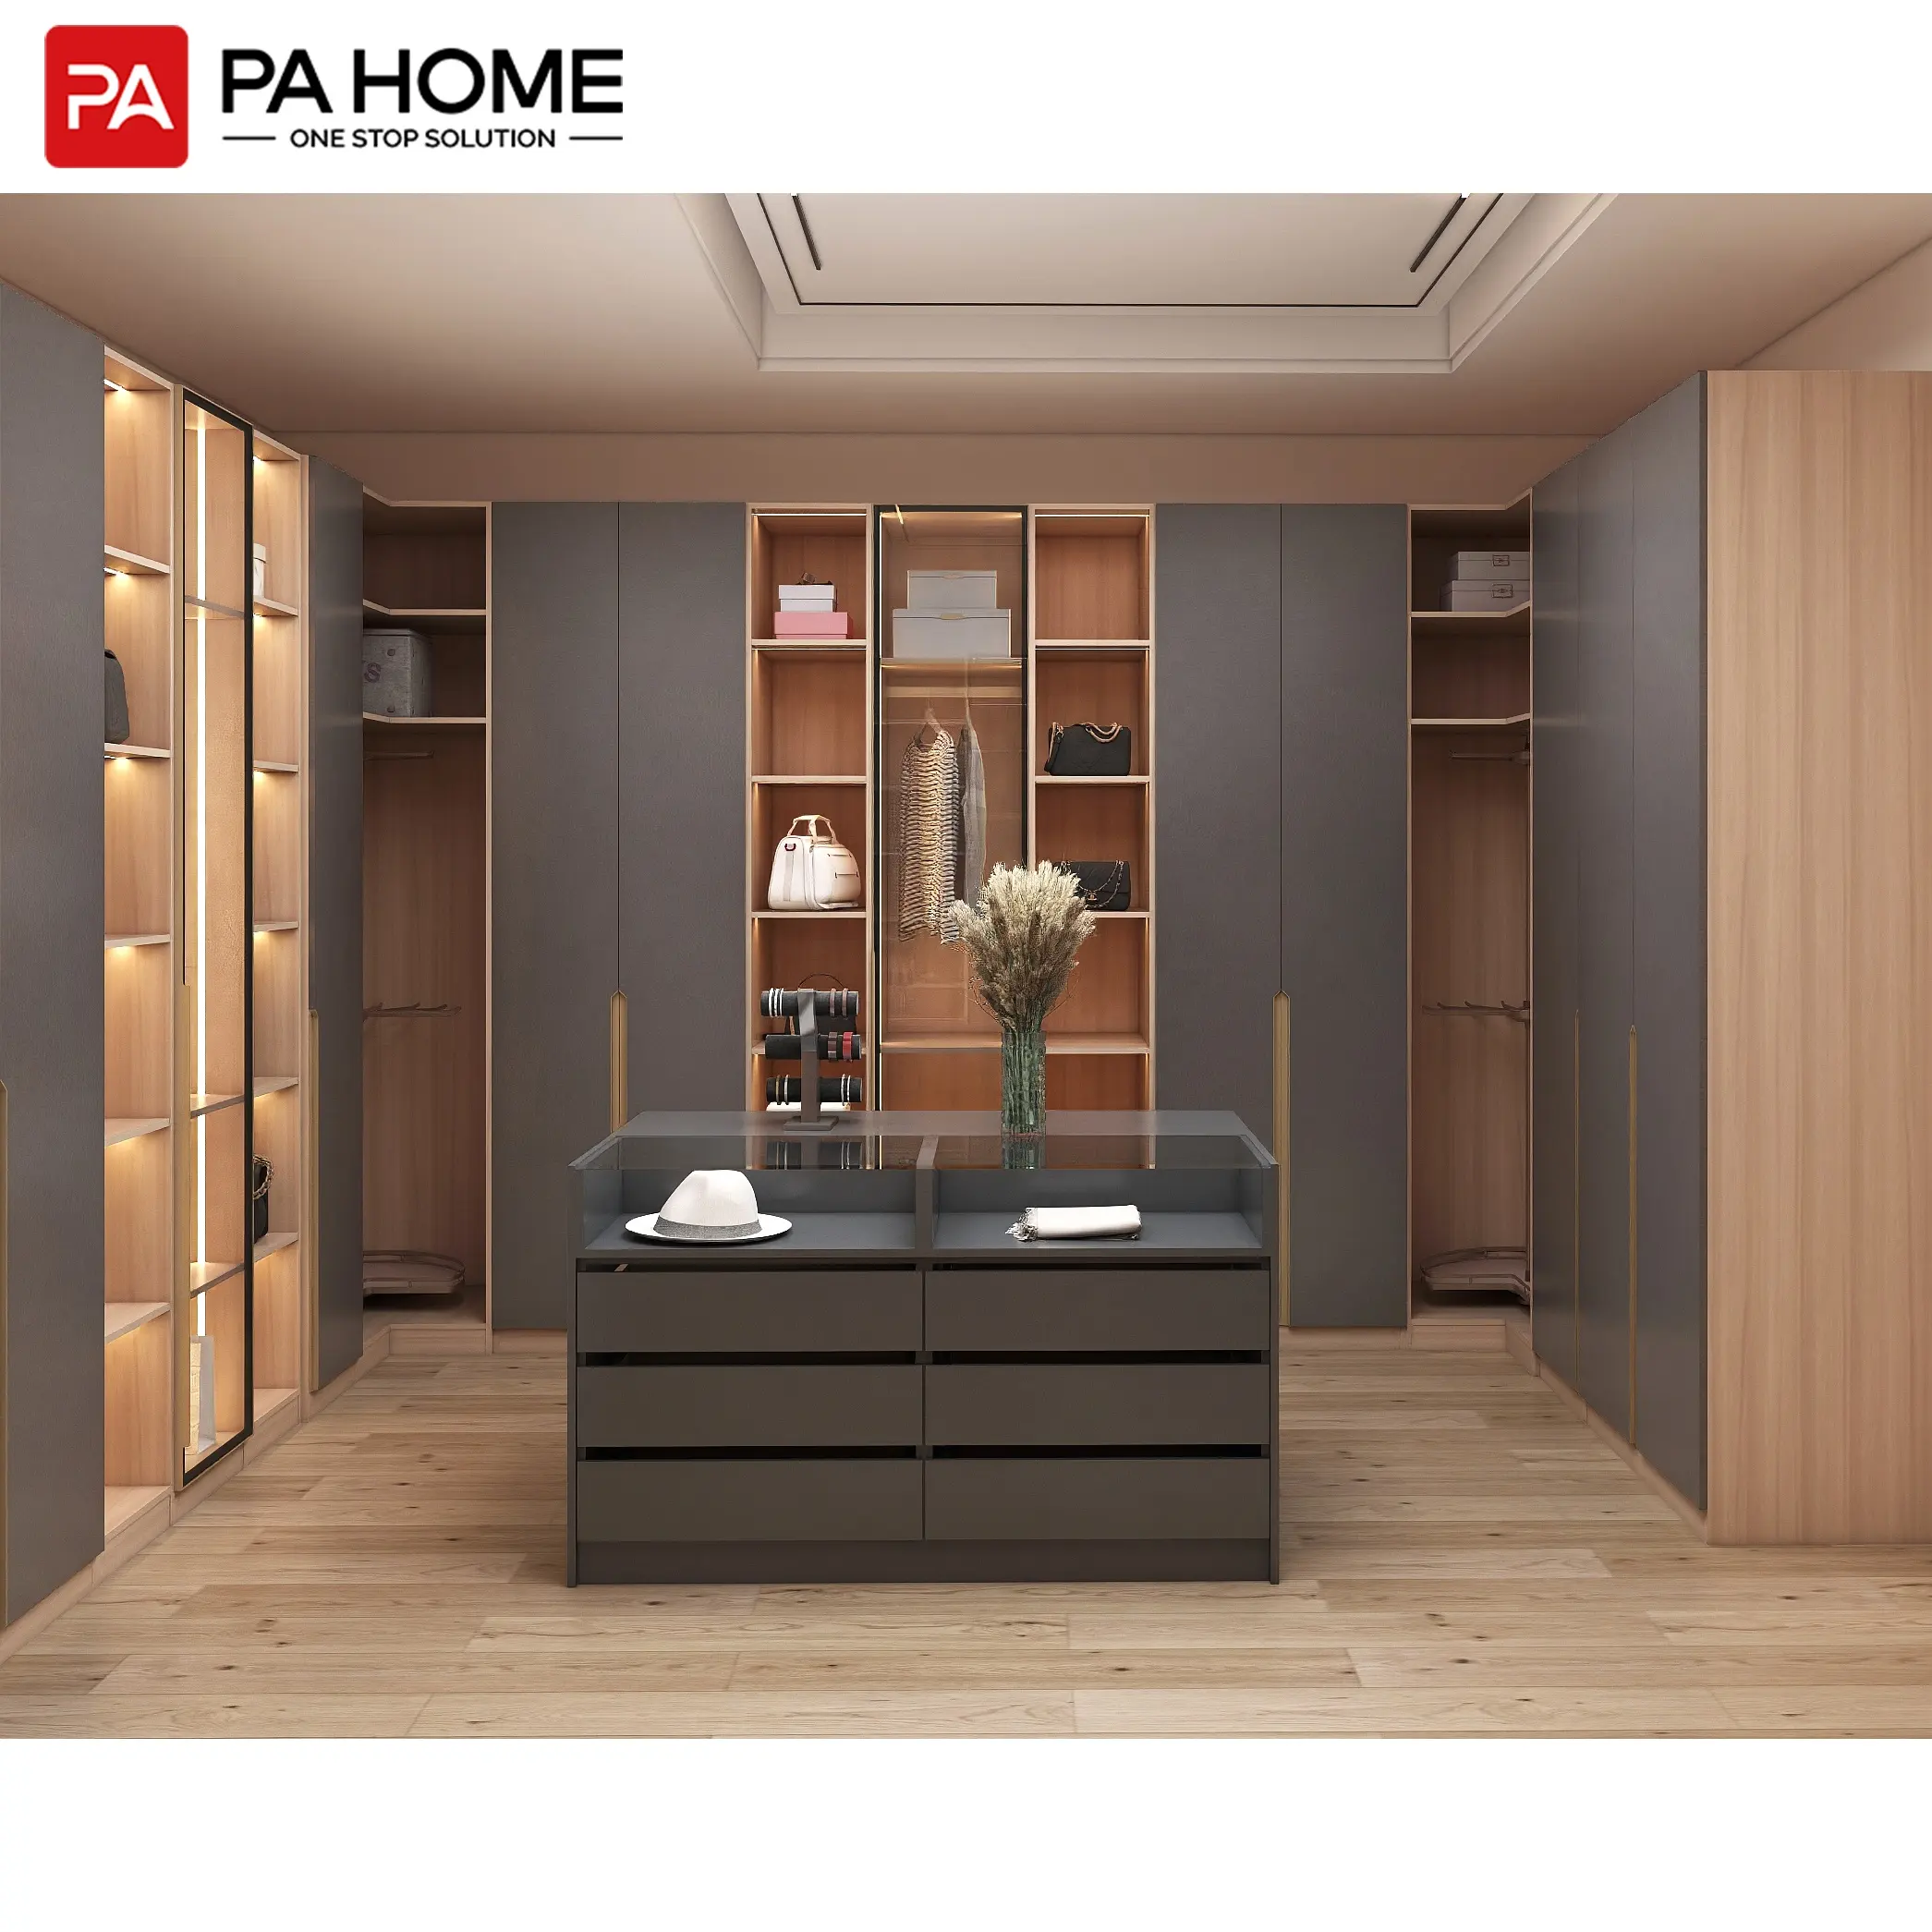 PA estilo europeo Sistema Modular walk in closet armario muebles de dormitorio